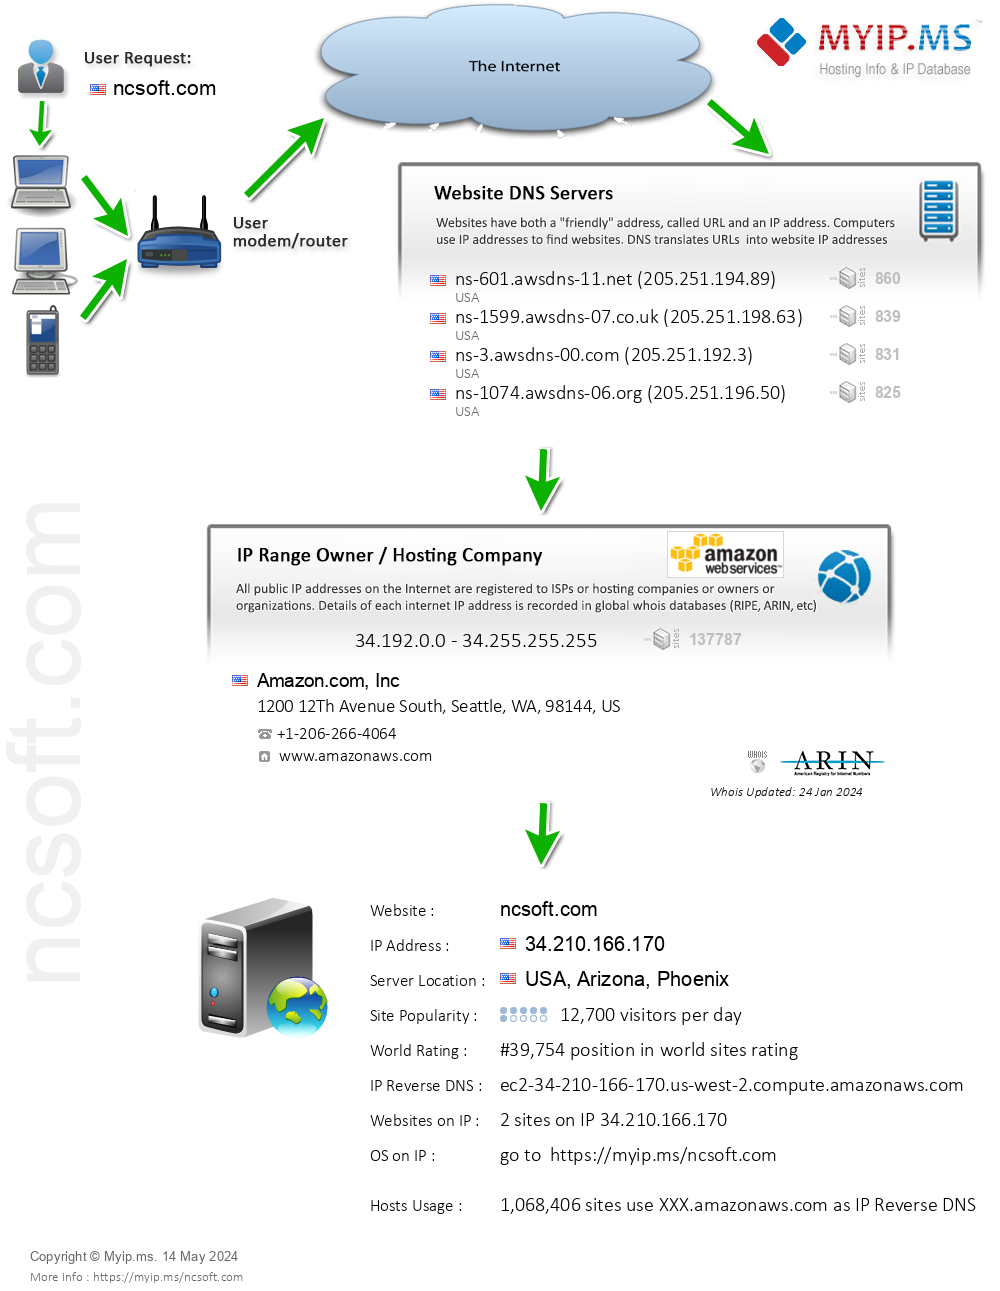 Ncsoft.com - Website Hosting Visual IP Diagram